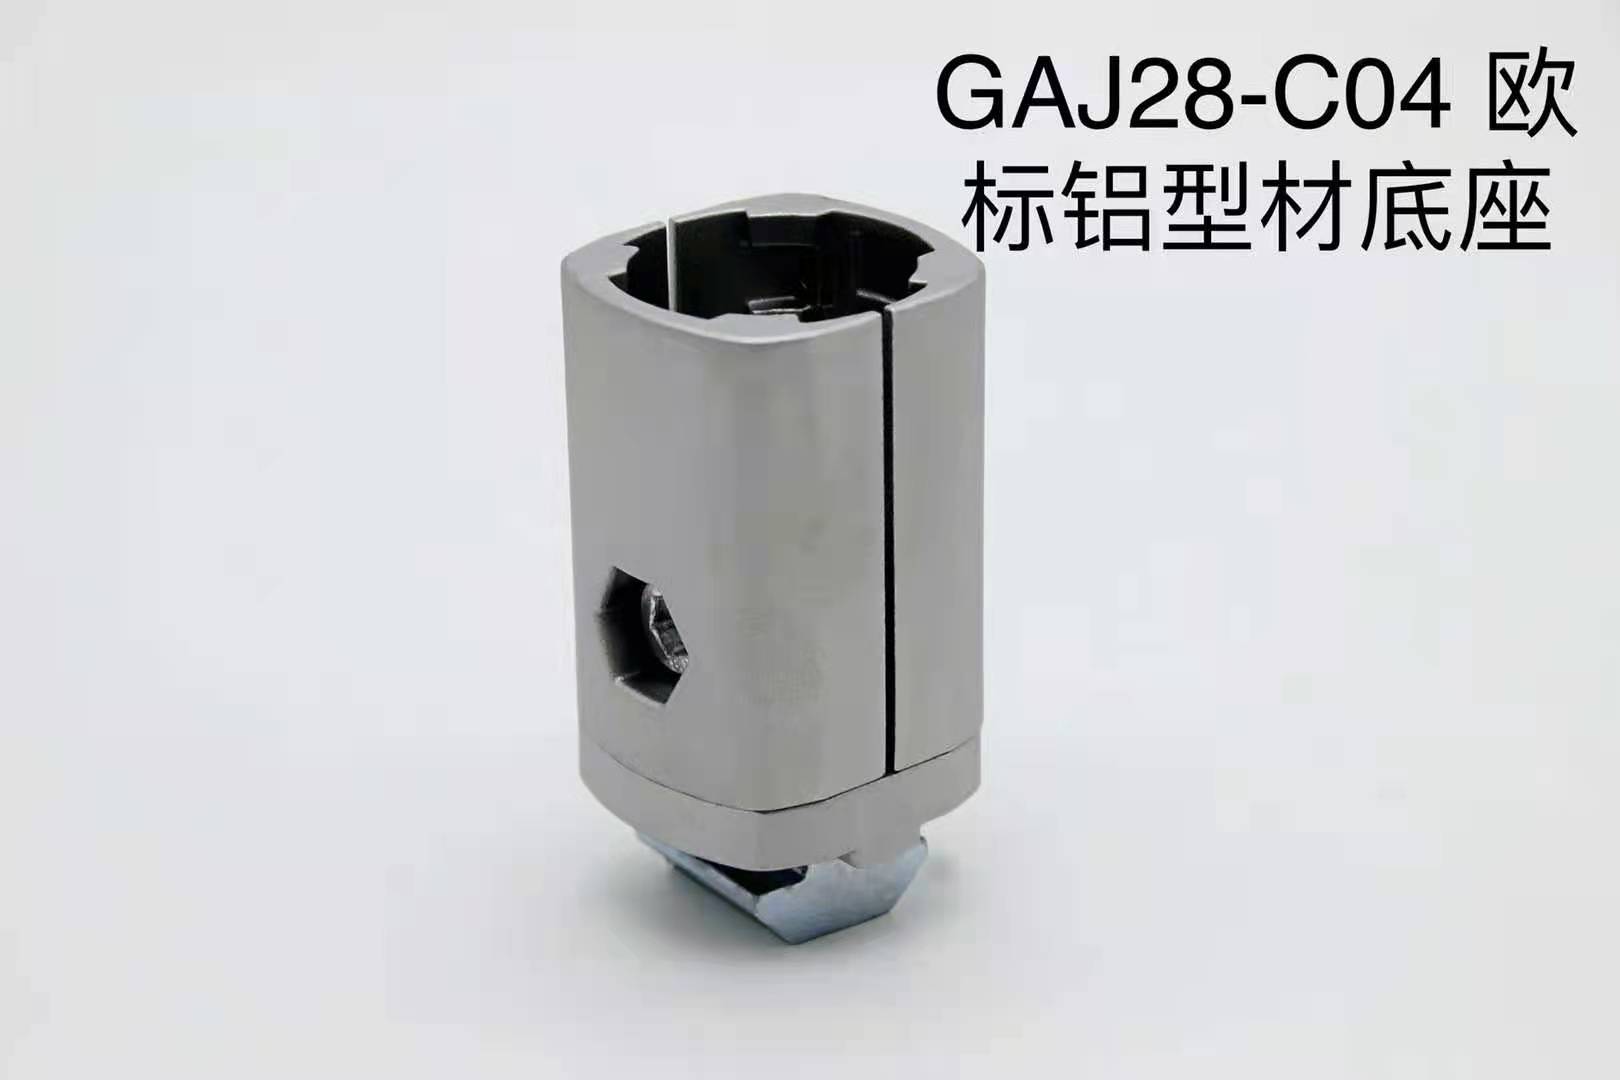 聊城GAJ28-C04欧标铝型材底座